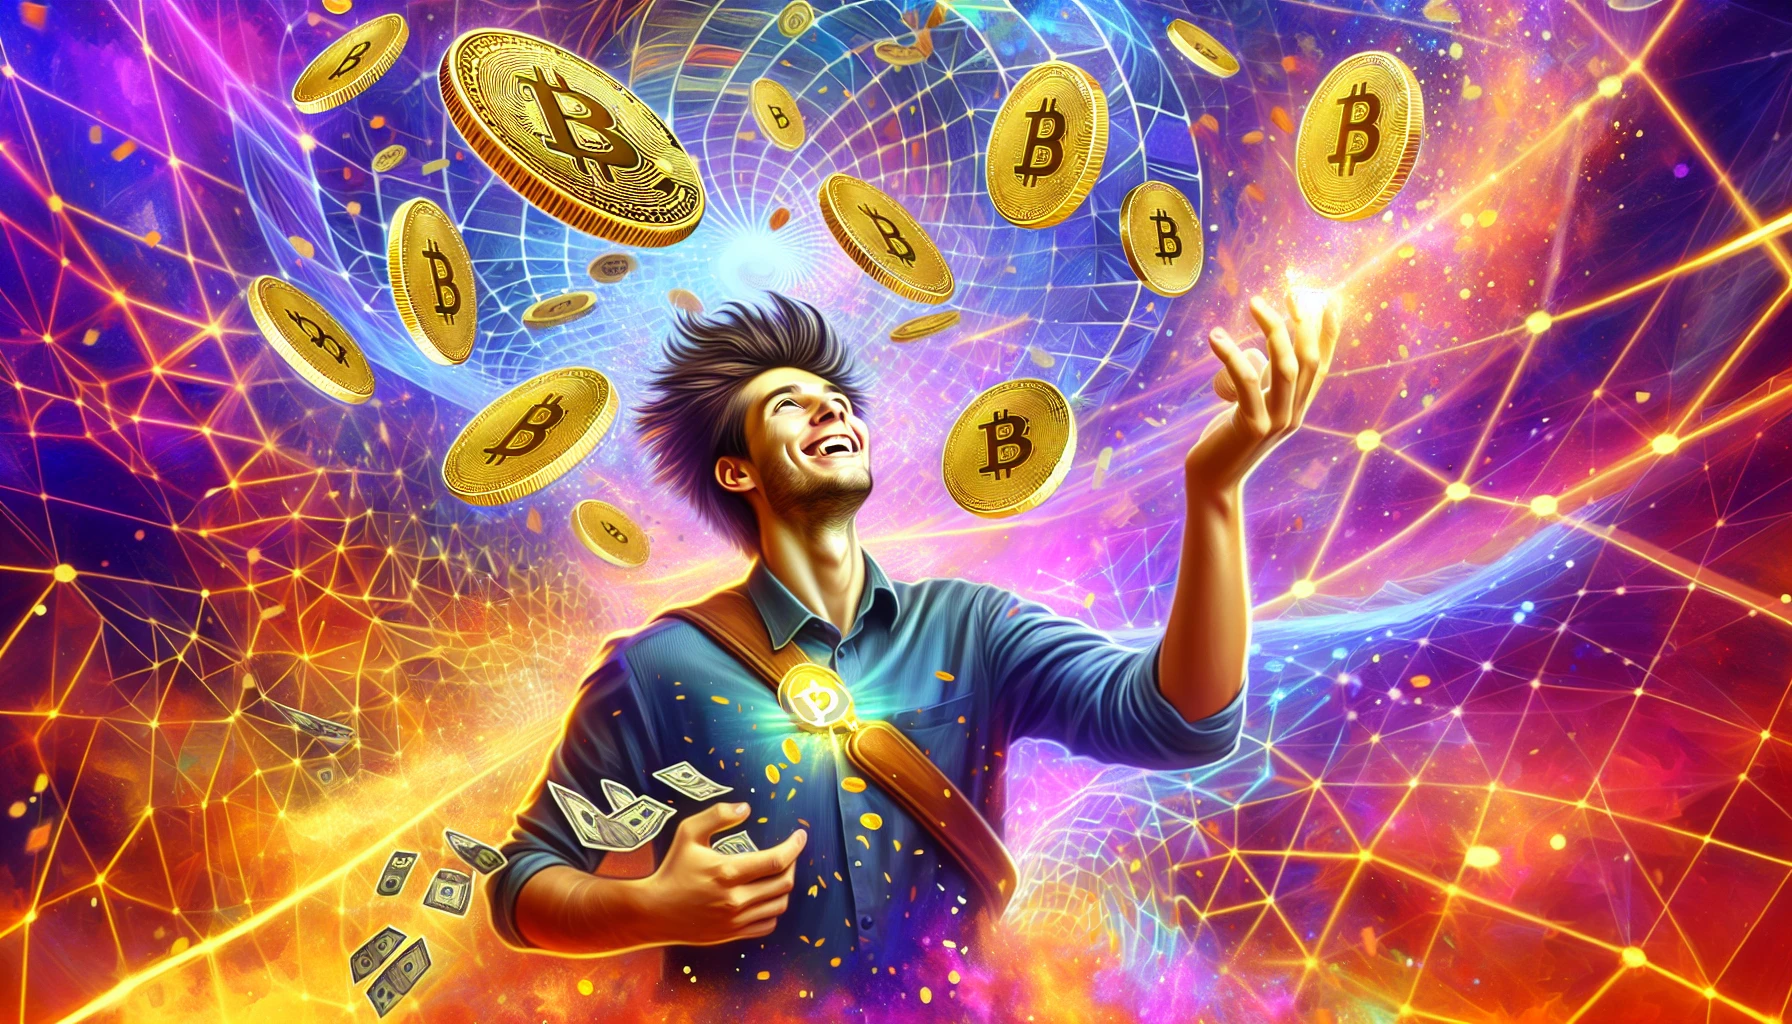 Johnny Lyu de KuCoin annonce un airdrop de 10M$ en Bitcoin et tokens KCS pour remercier les utilisateurs après des retards de retrait.